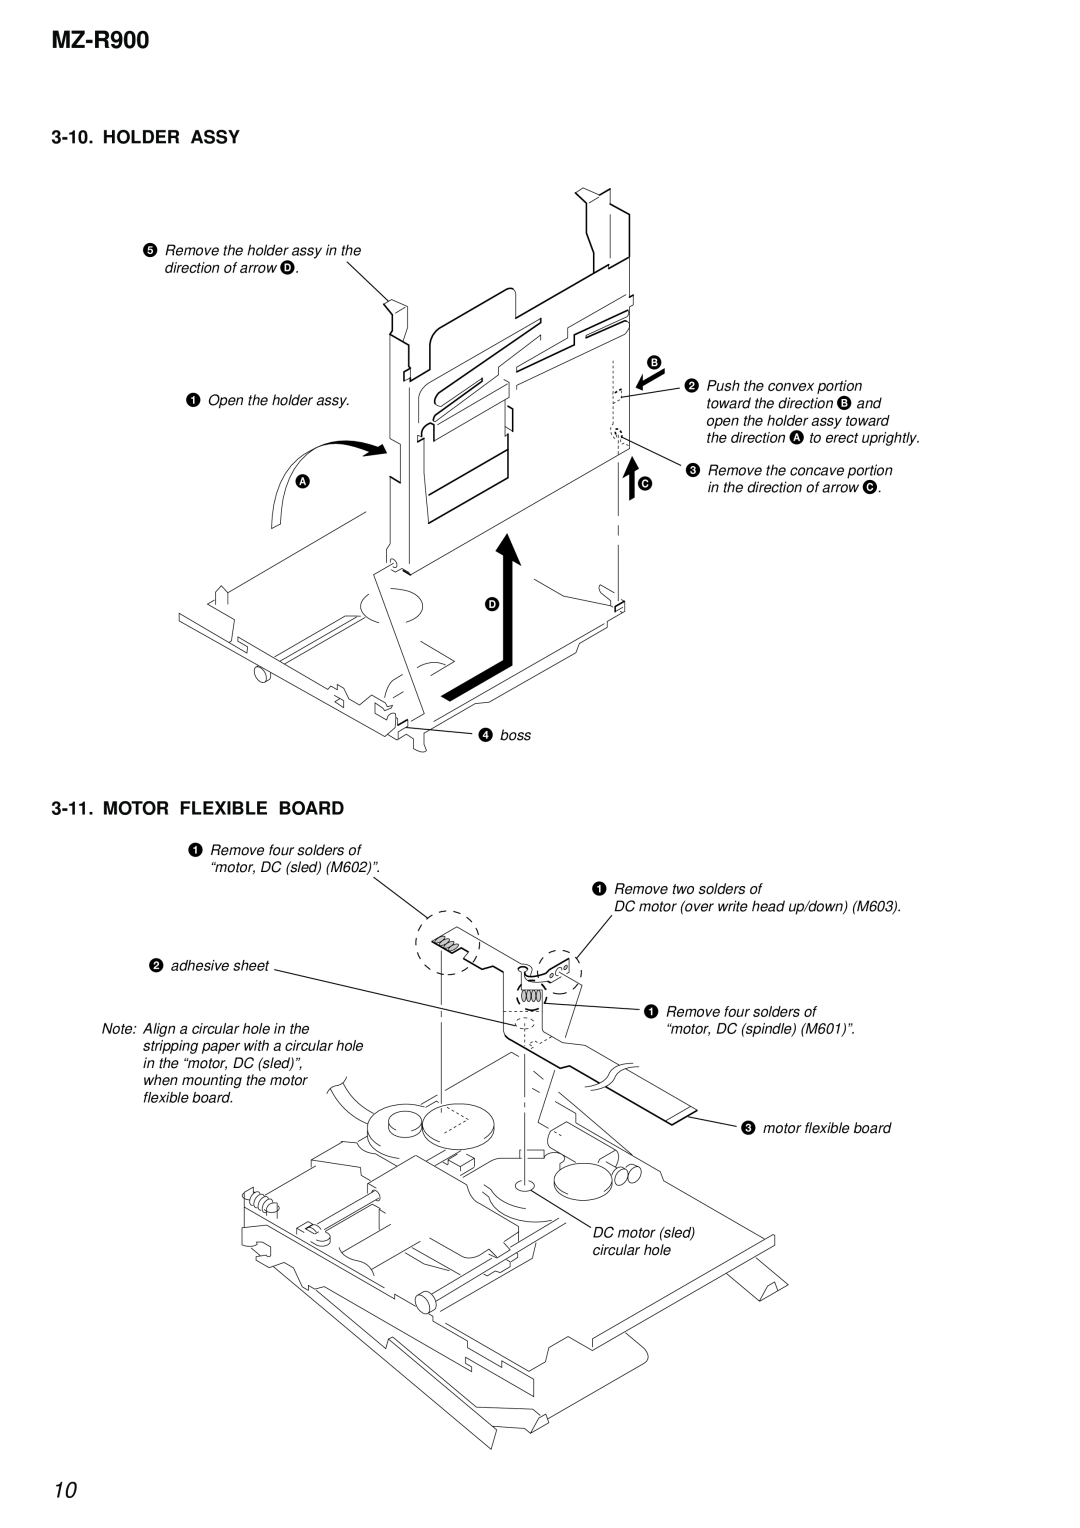 Sony MZ-R900 service manual Holder Assy, Motor Flexible Board 